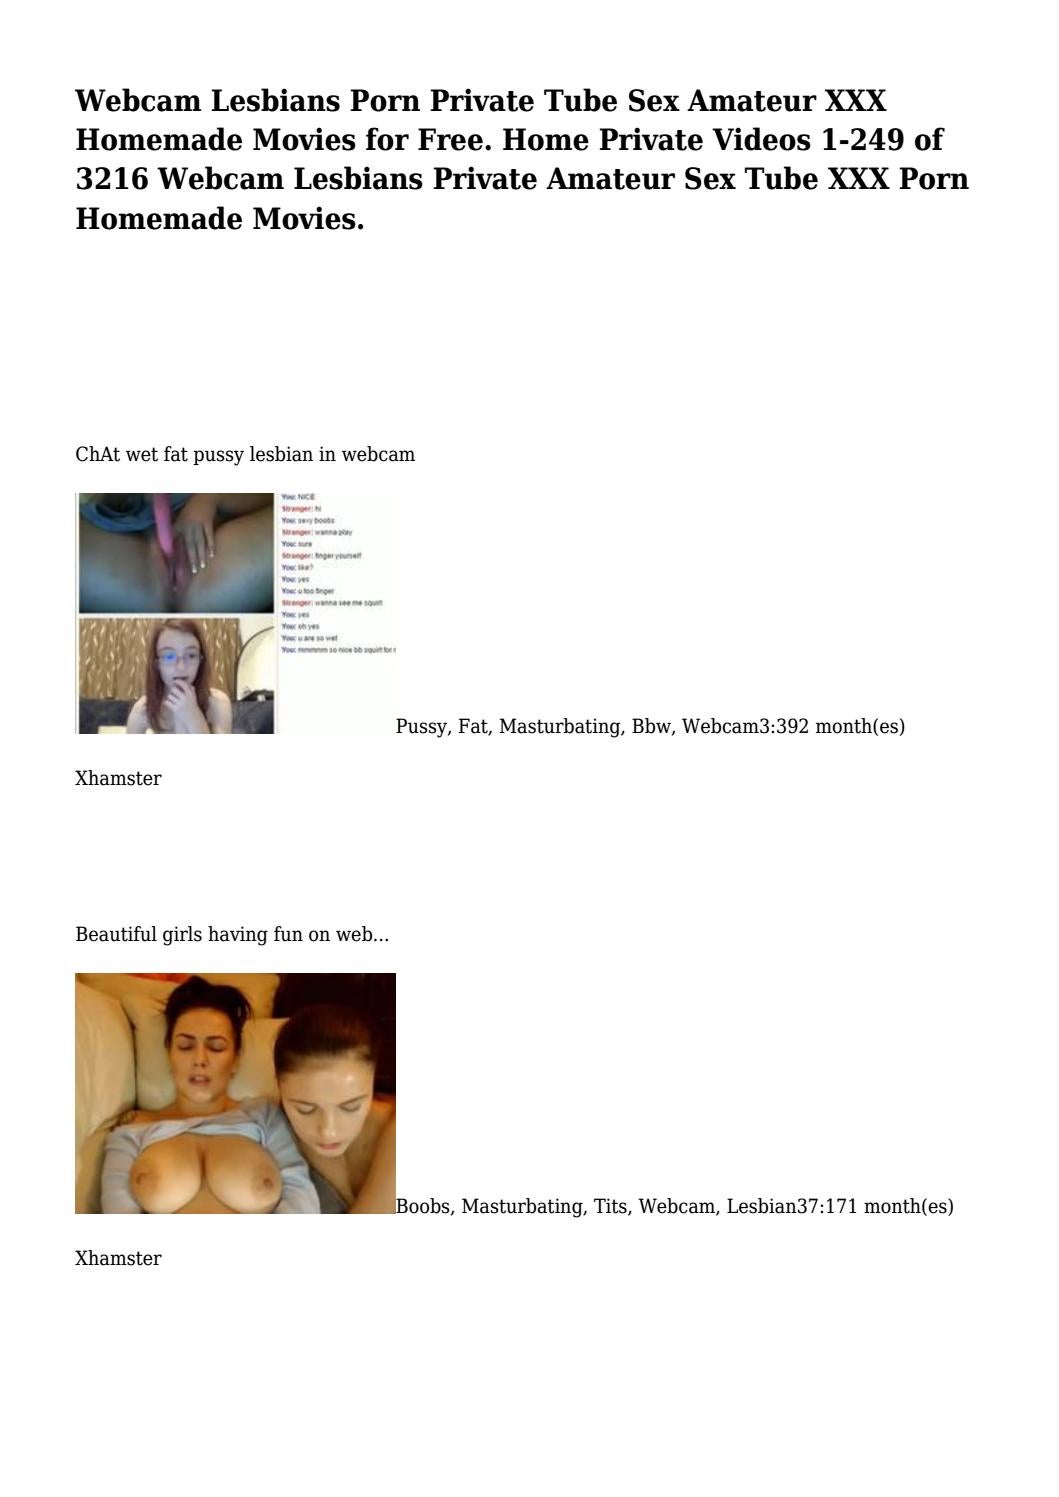 ann fanning recommends amateur lesbians on webcam pic